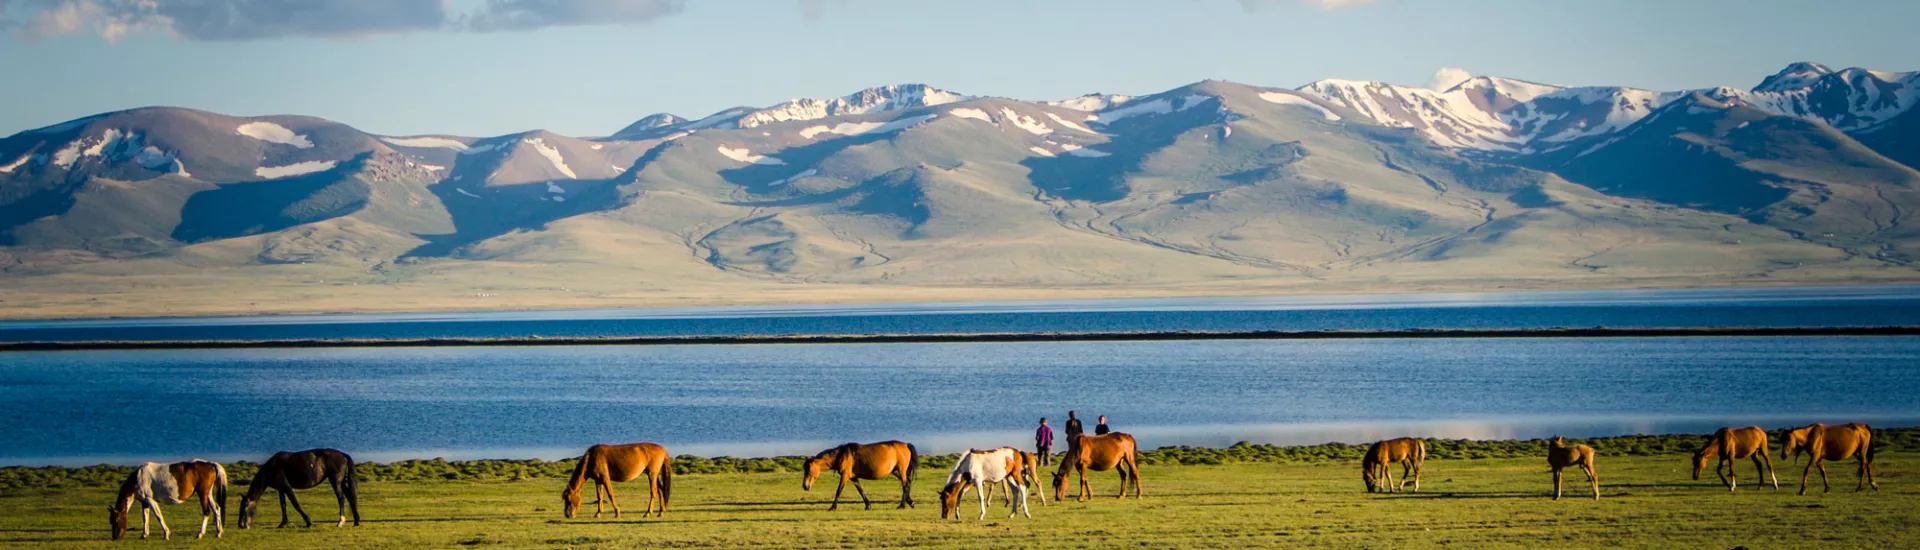 Grasende Pferde am Bergsee Song Kul in Kirgisistan